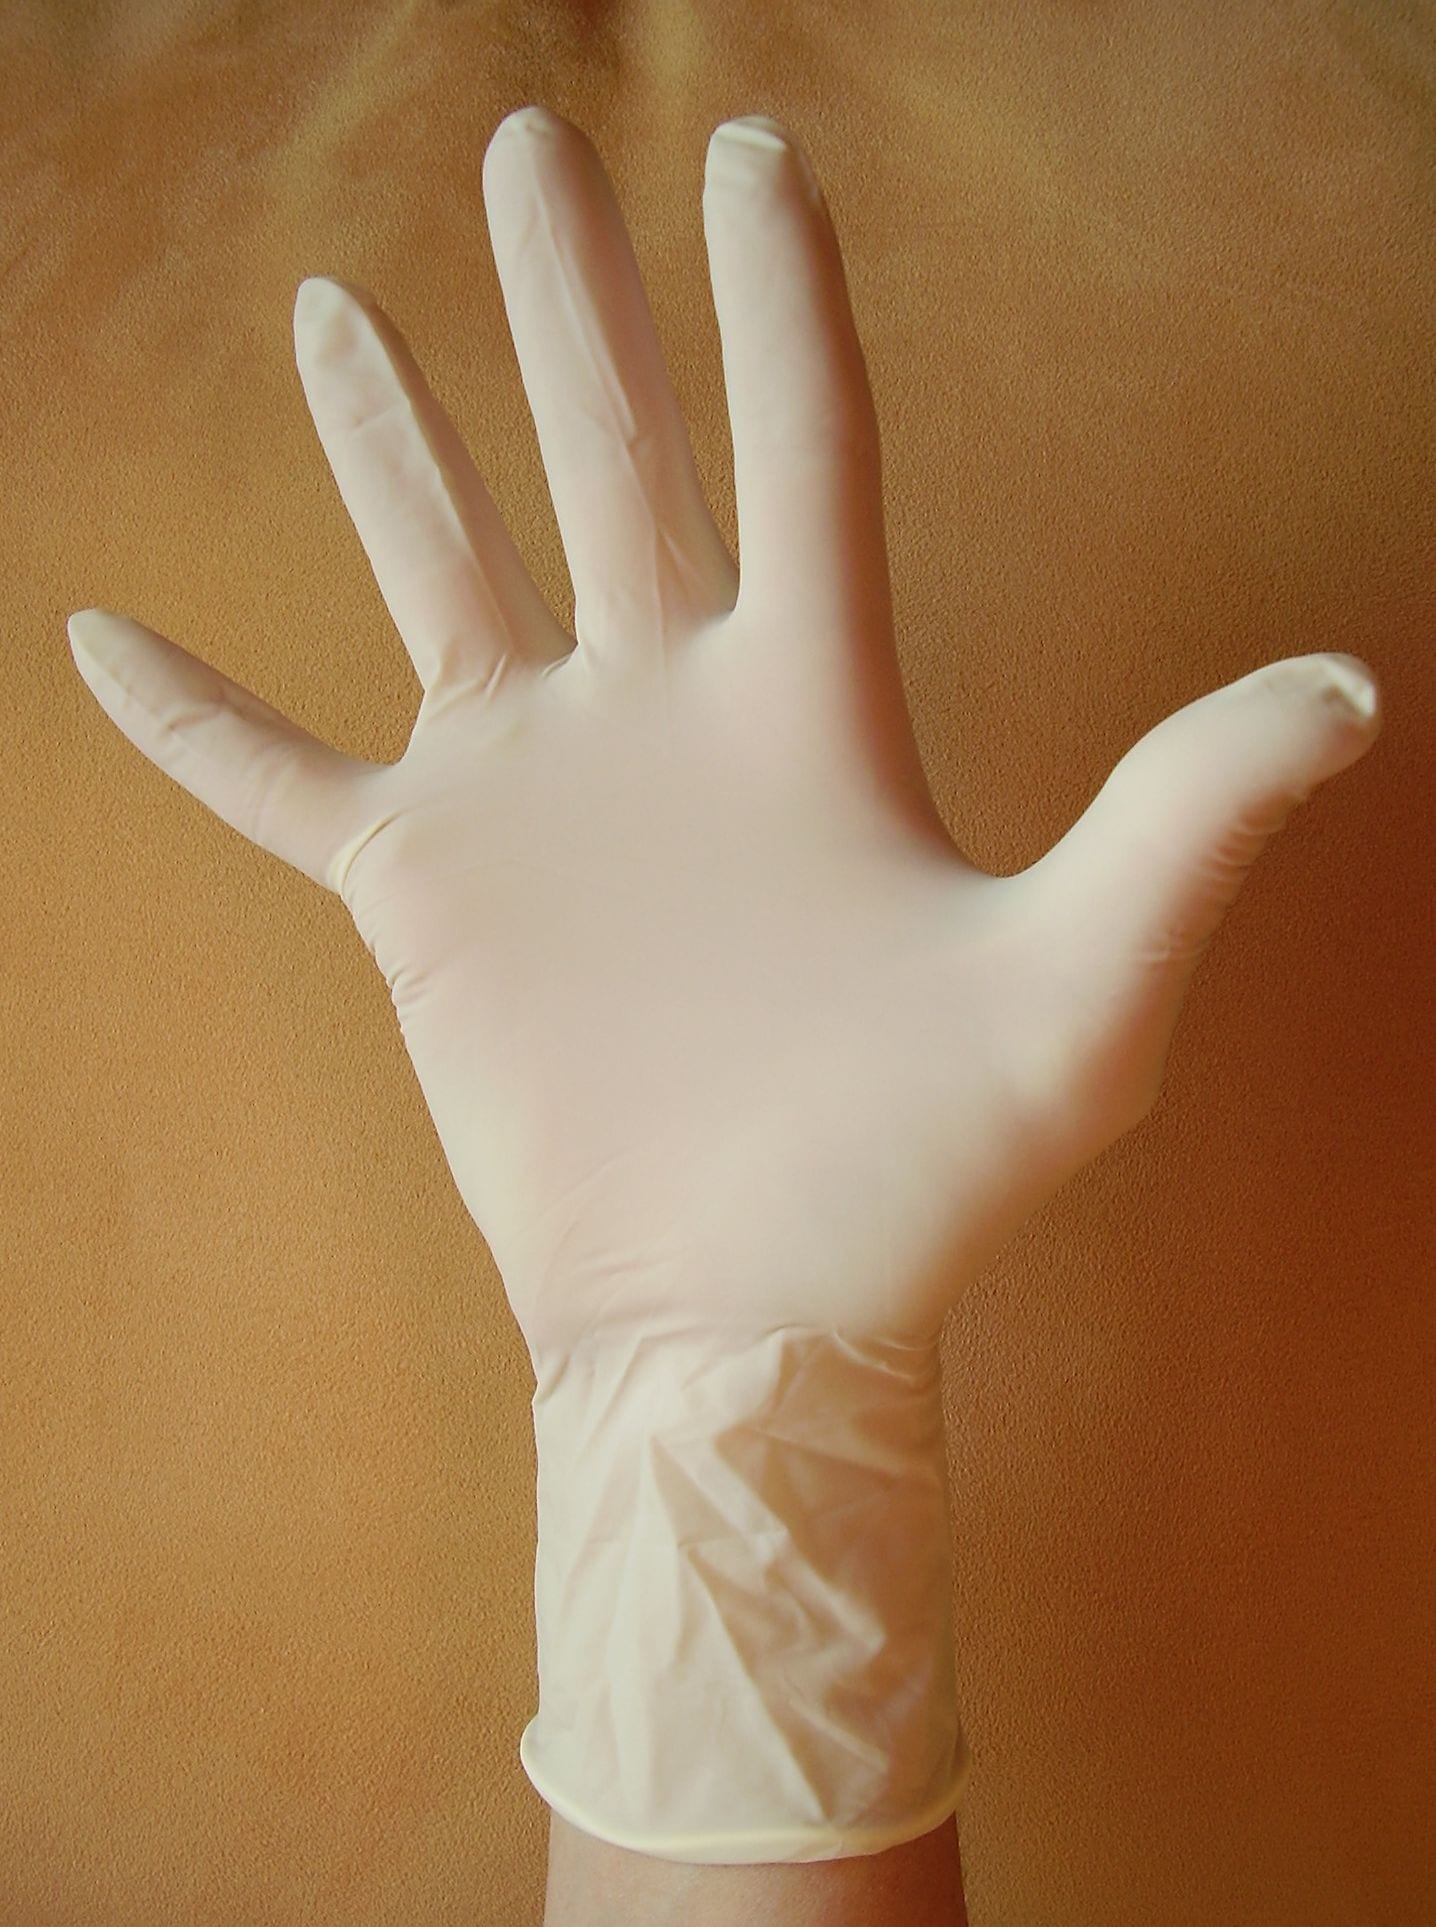 U.S. lifts ban on Malaysian medical glove maker amid shortage